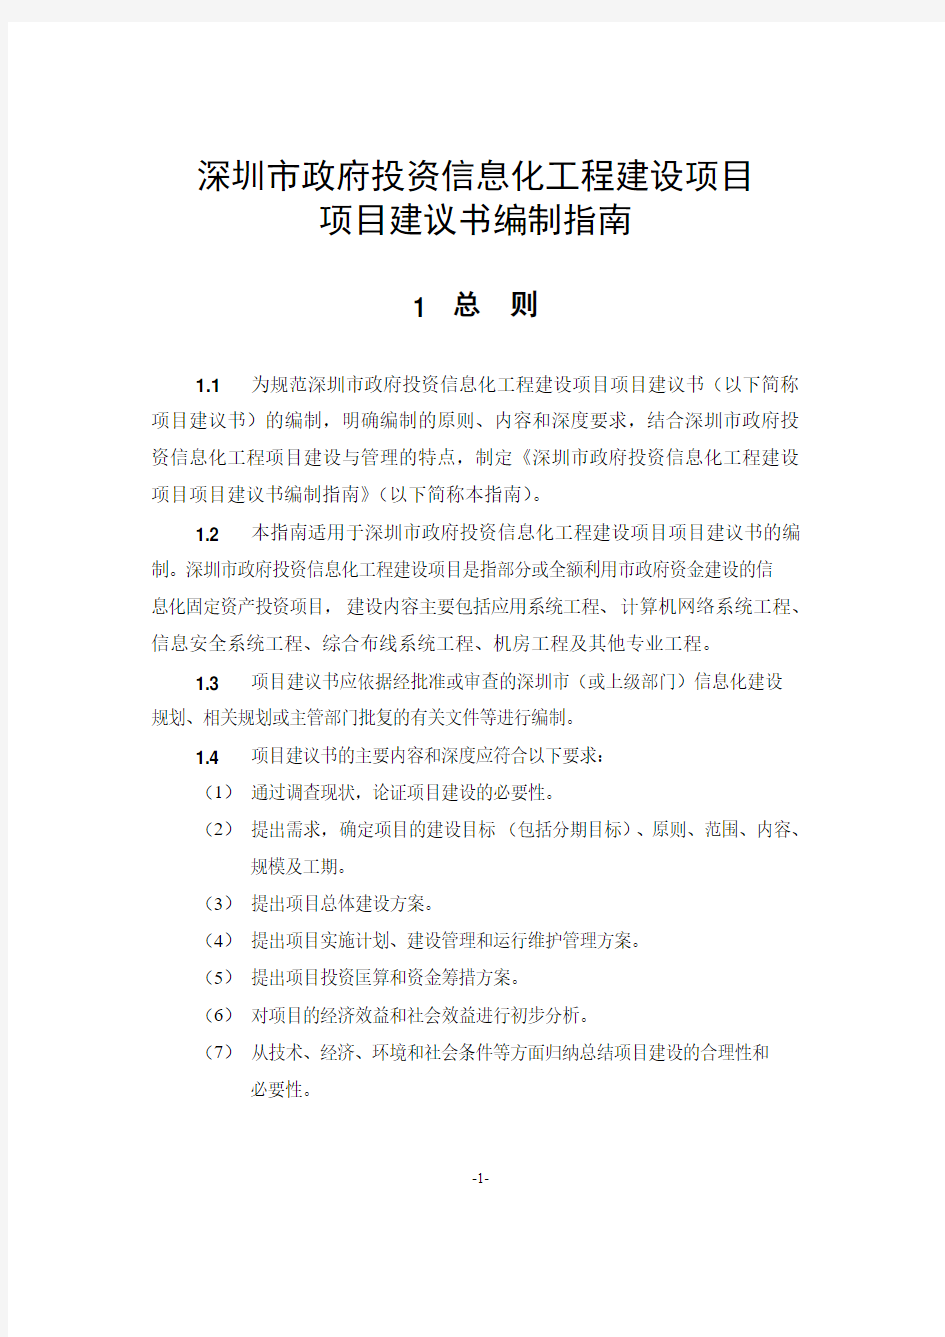 深圳市政府投资信息化工程建设项目项目建议书编制指南